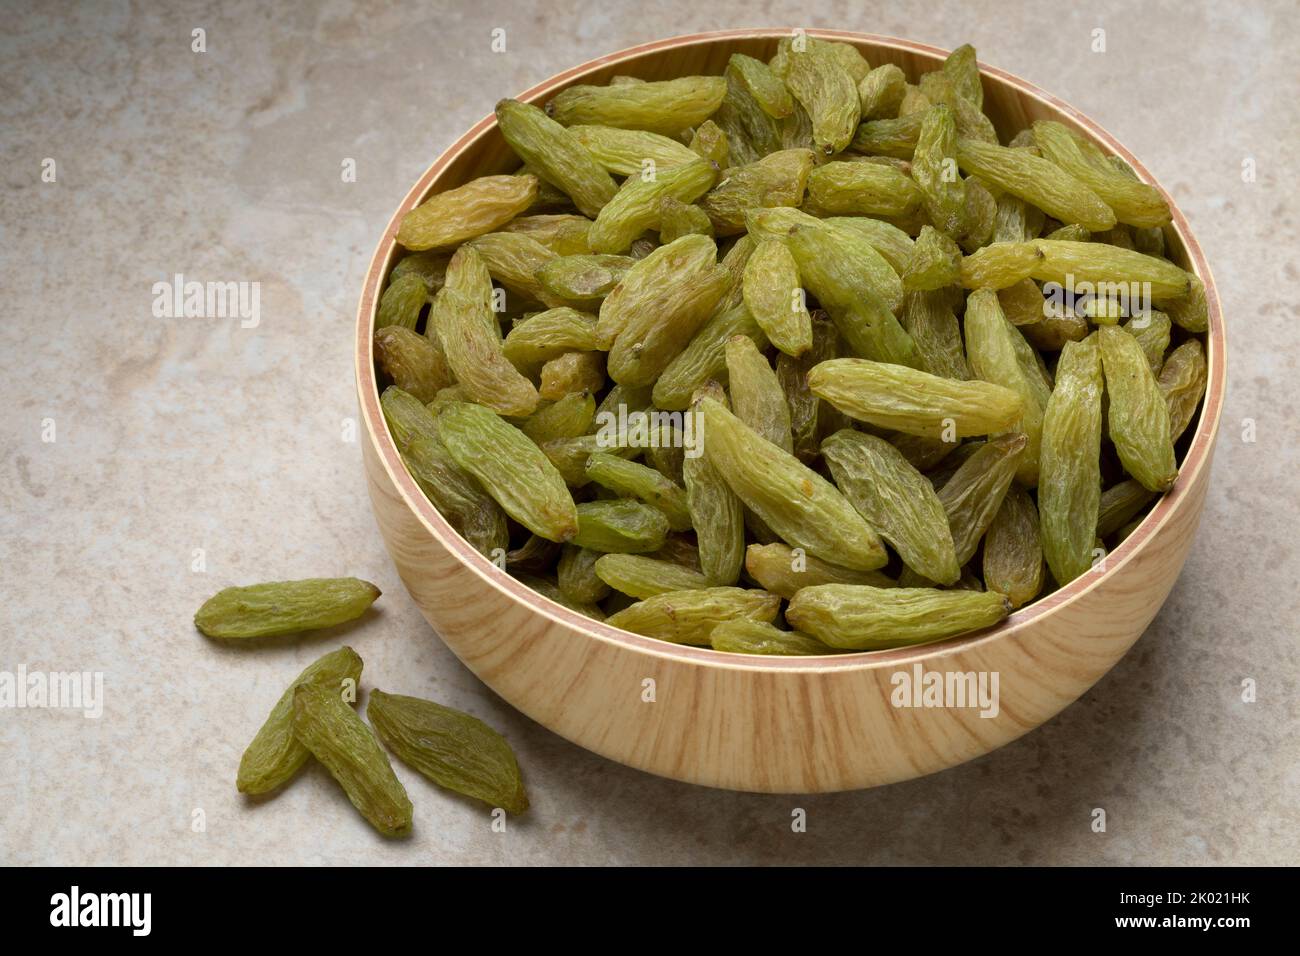 Ciotola con uva passa verde dolce afghana primo piano Foto Stock